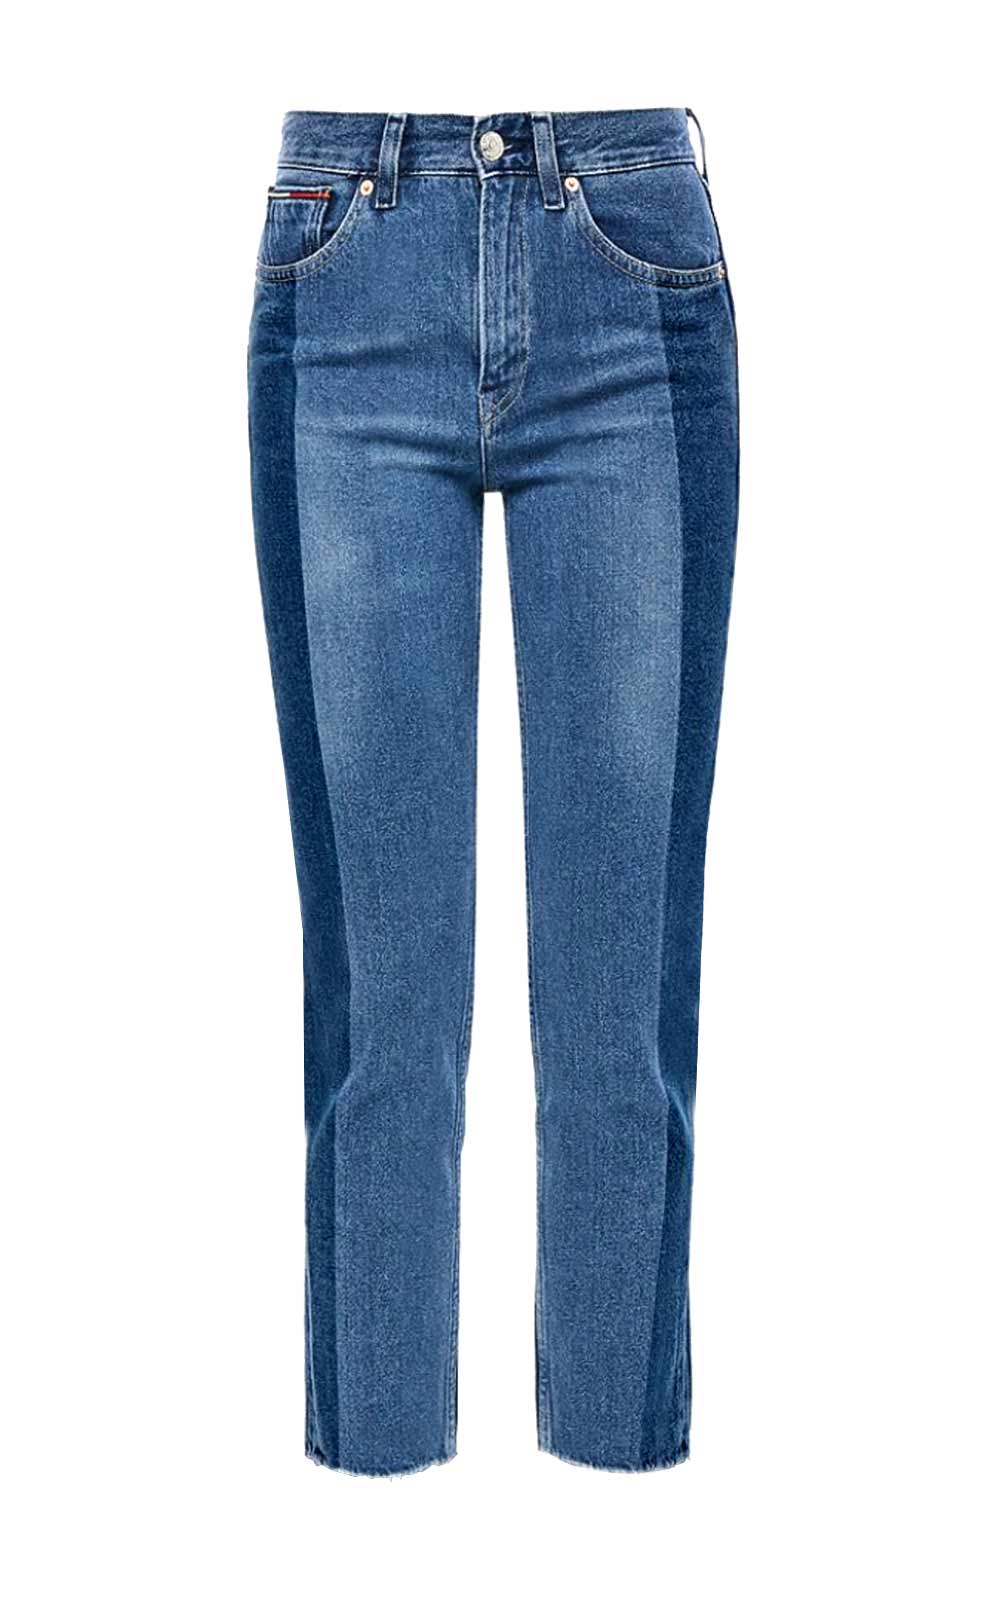 Tommy Jeans Damen Marken-Jeans, blau-used, 30 inch